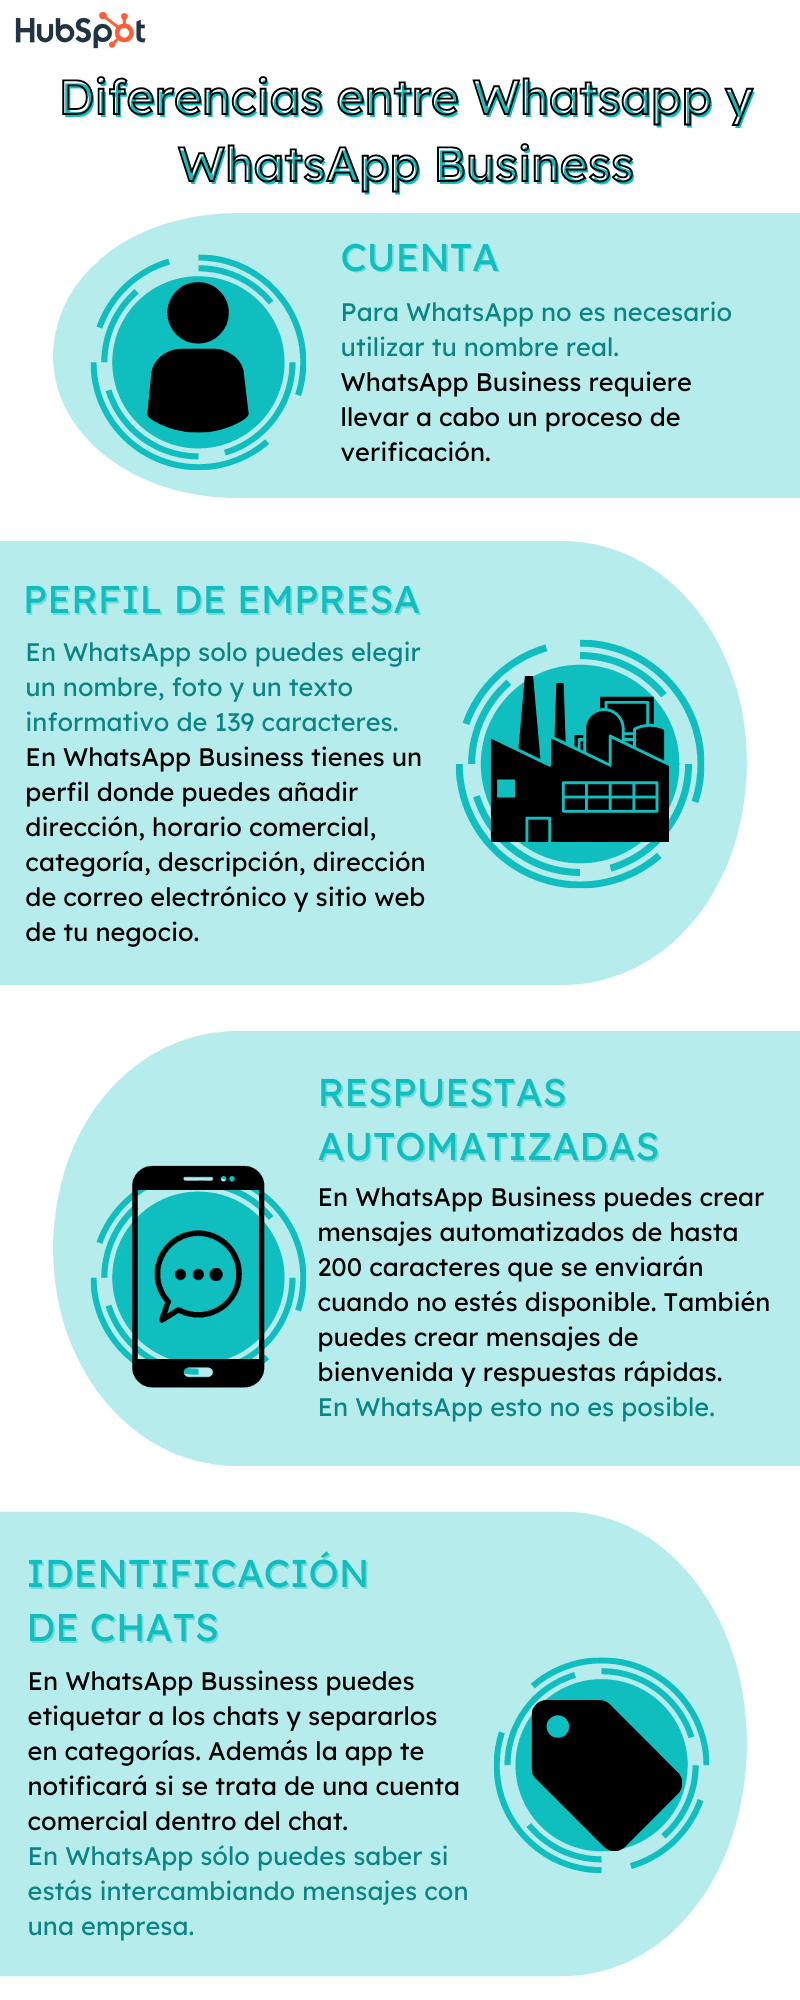 Las 4 diferencias entre WhatsApp y WhatsApp Business